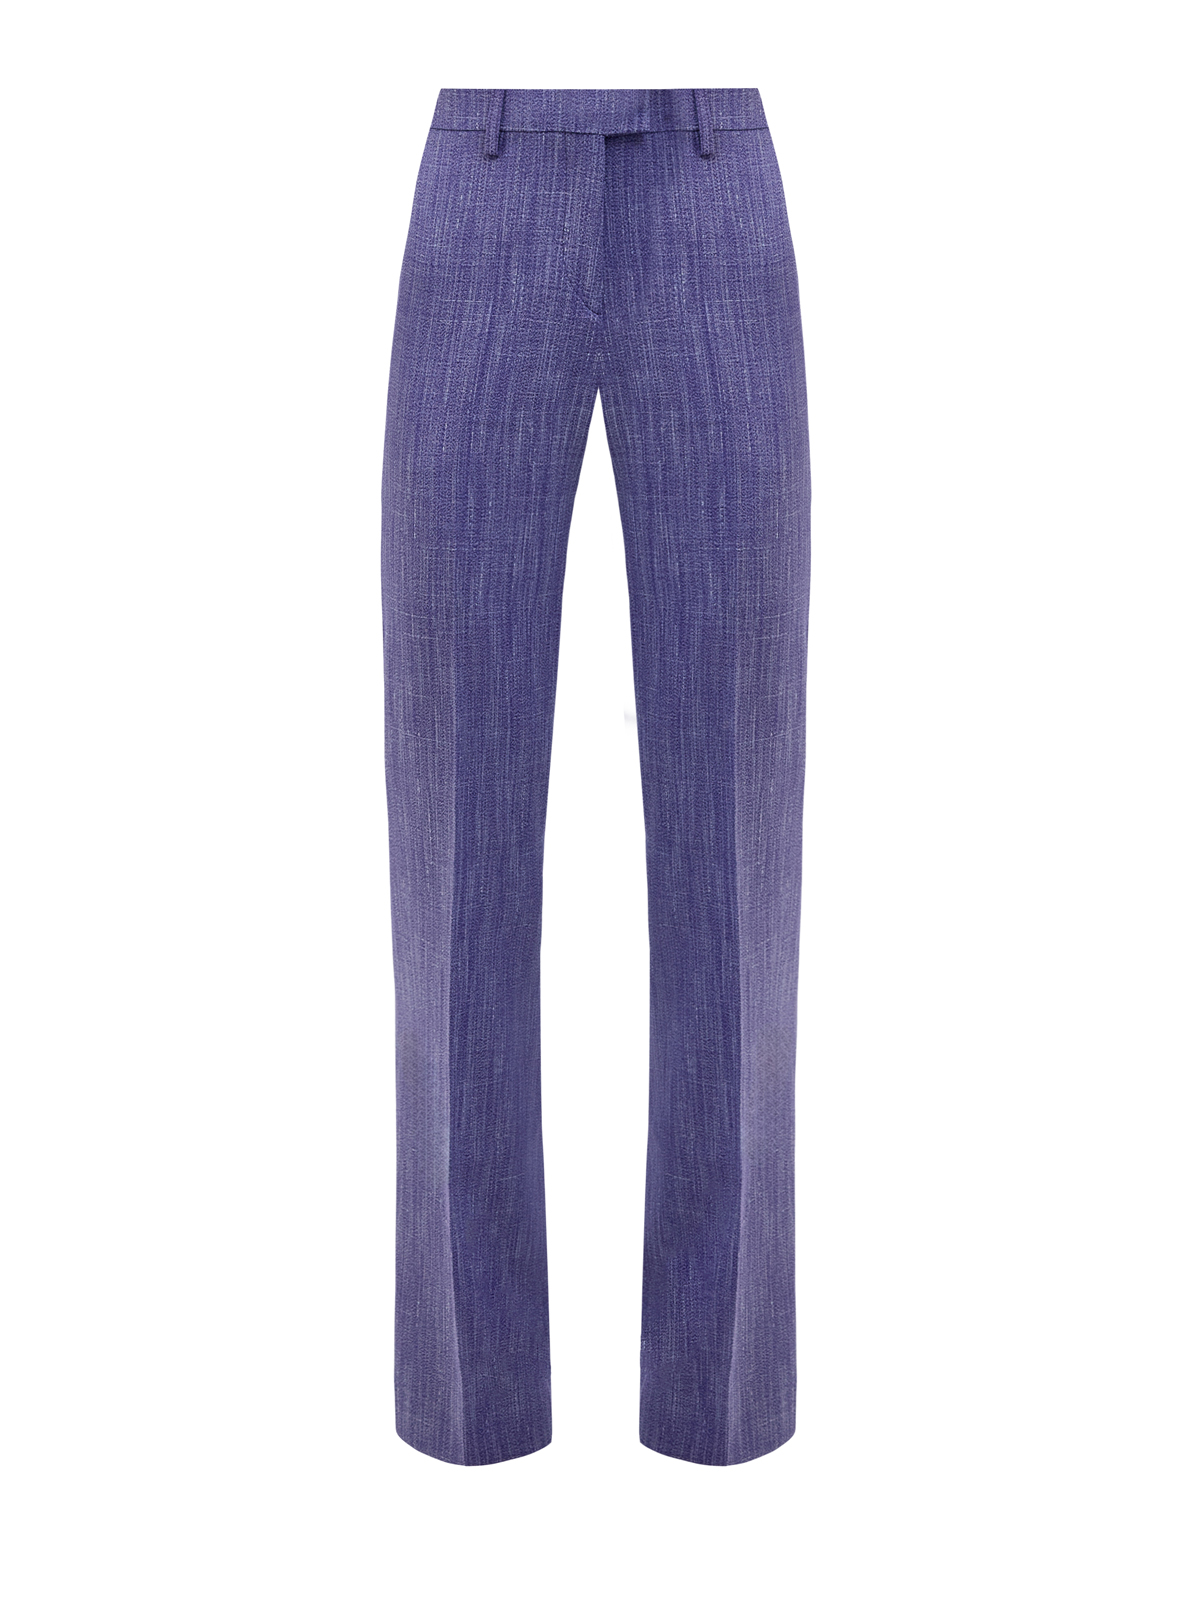 Расклешенные брюки на высокой посадке из меланжевой вискозы ETRO, цвет фиолетовый, размер 40;42;44;46